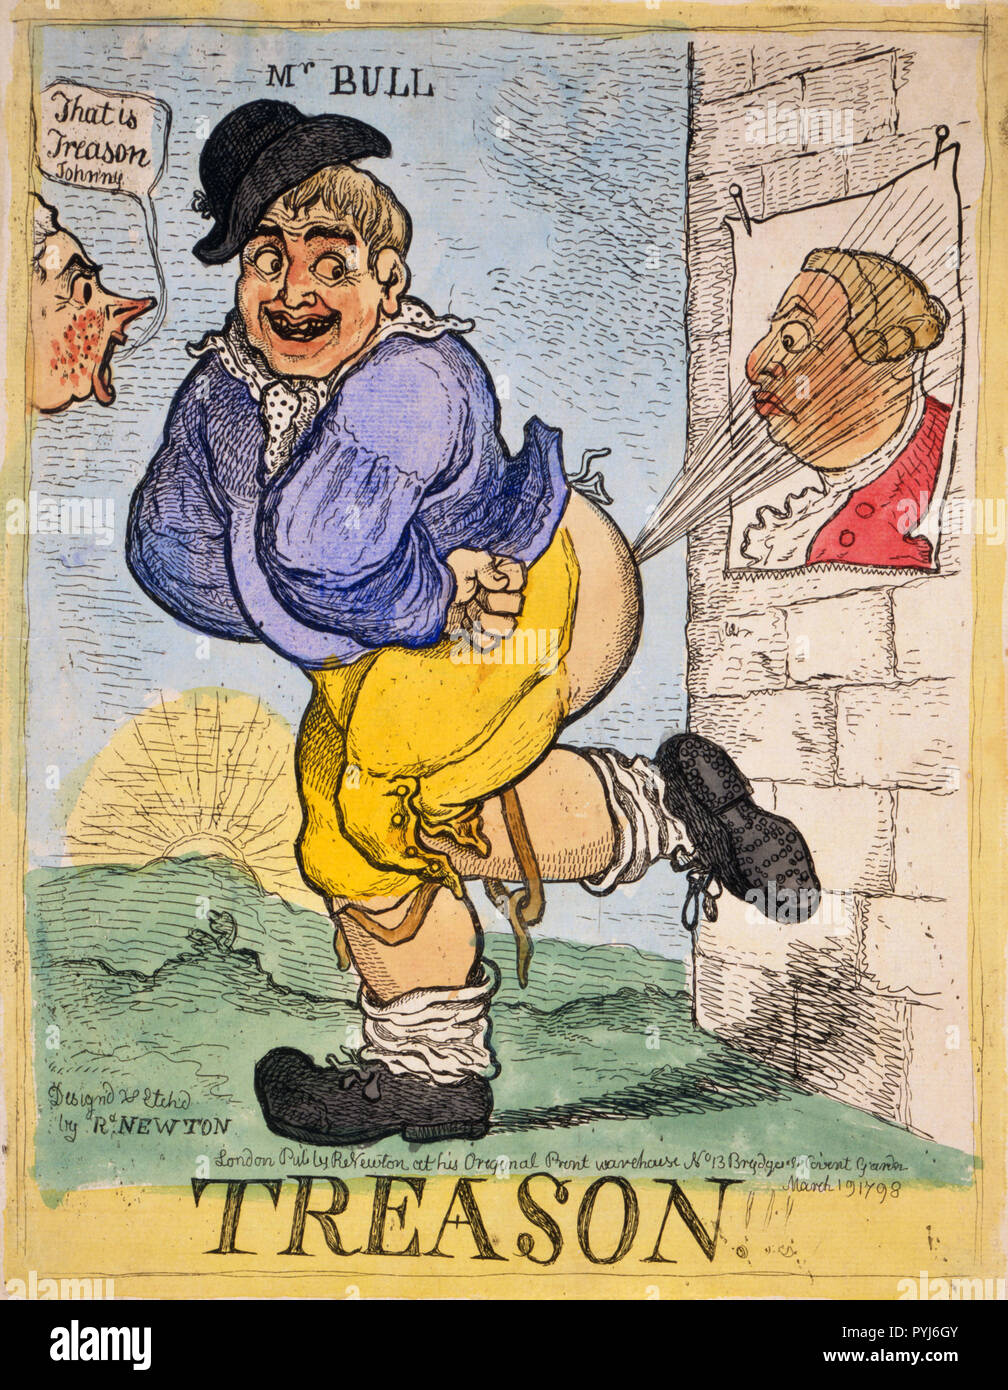 Eine stout, lächelnd John Bull leitet ein Knall von seinem hinteren Ende gegen ein Poster von König Georg III. an die Wand heftete. Das Bild der König sieht überrascht. Stockfoto